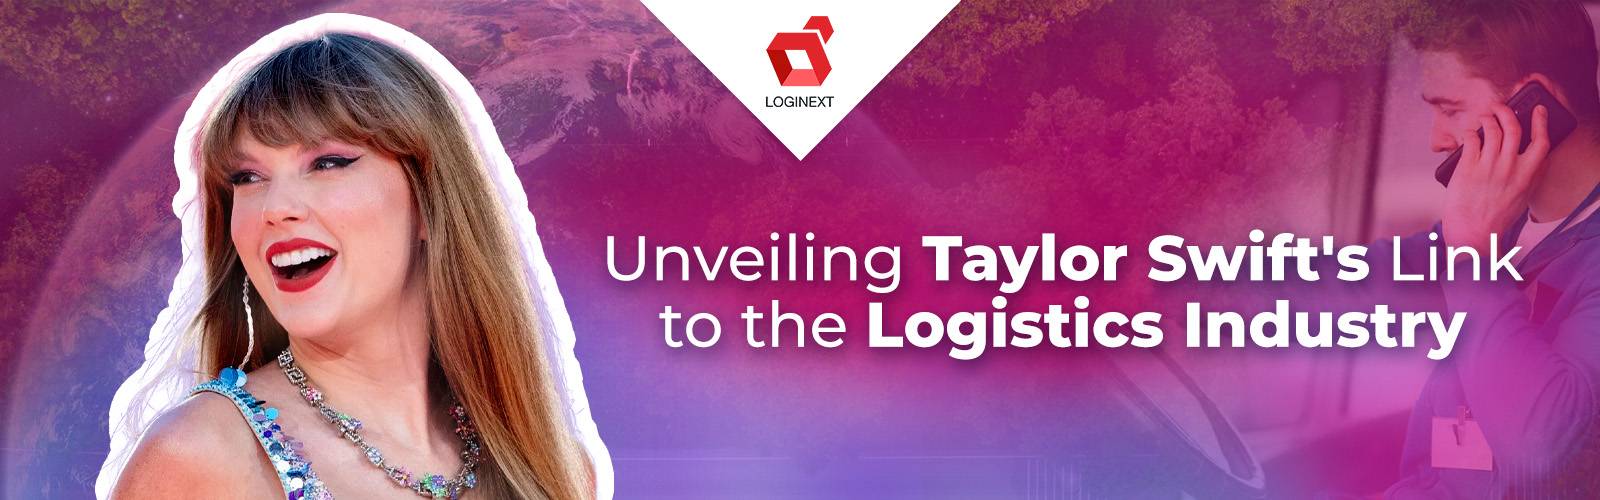 Att koppla samman Taylor Swifts musik och logistikbranschen